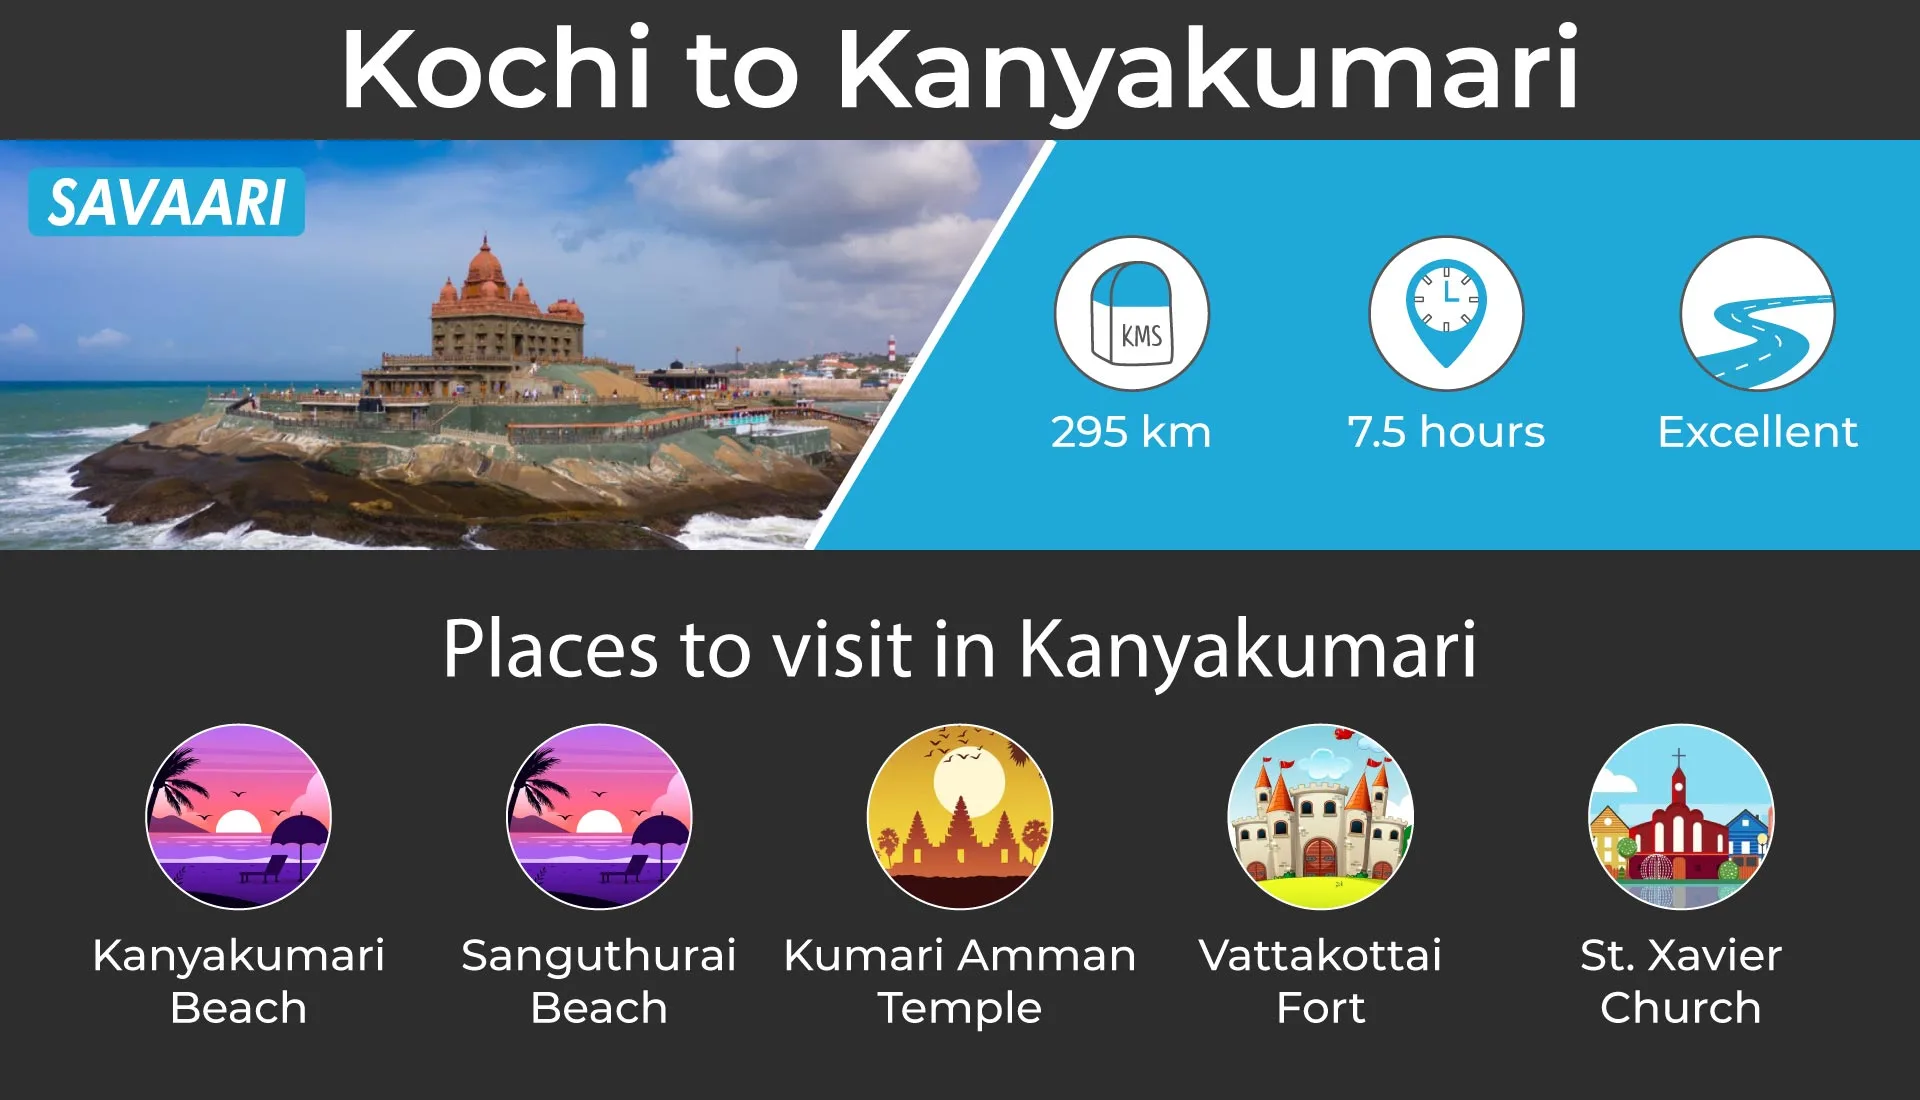 Kochi to Kanyakumari by road